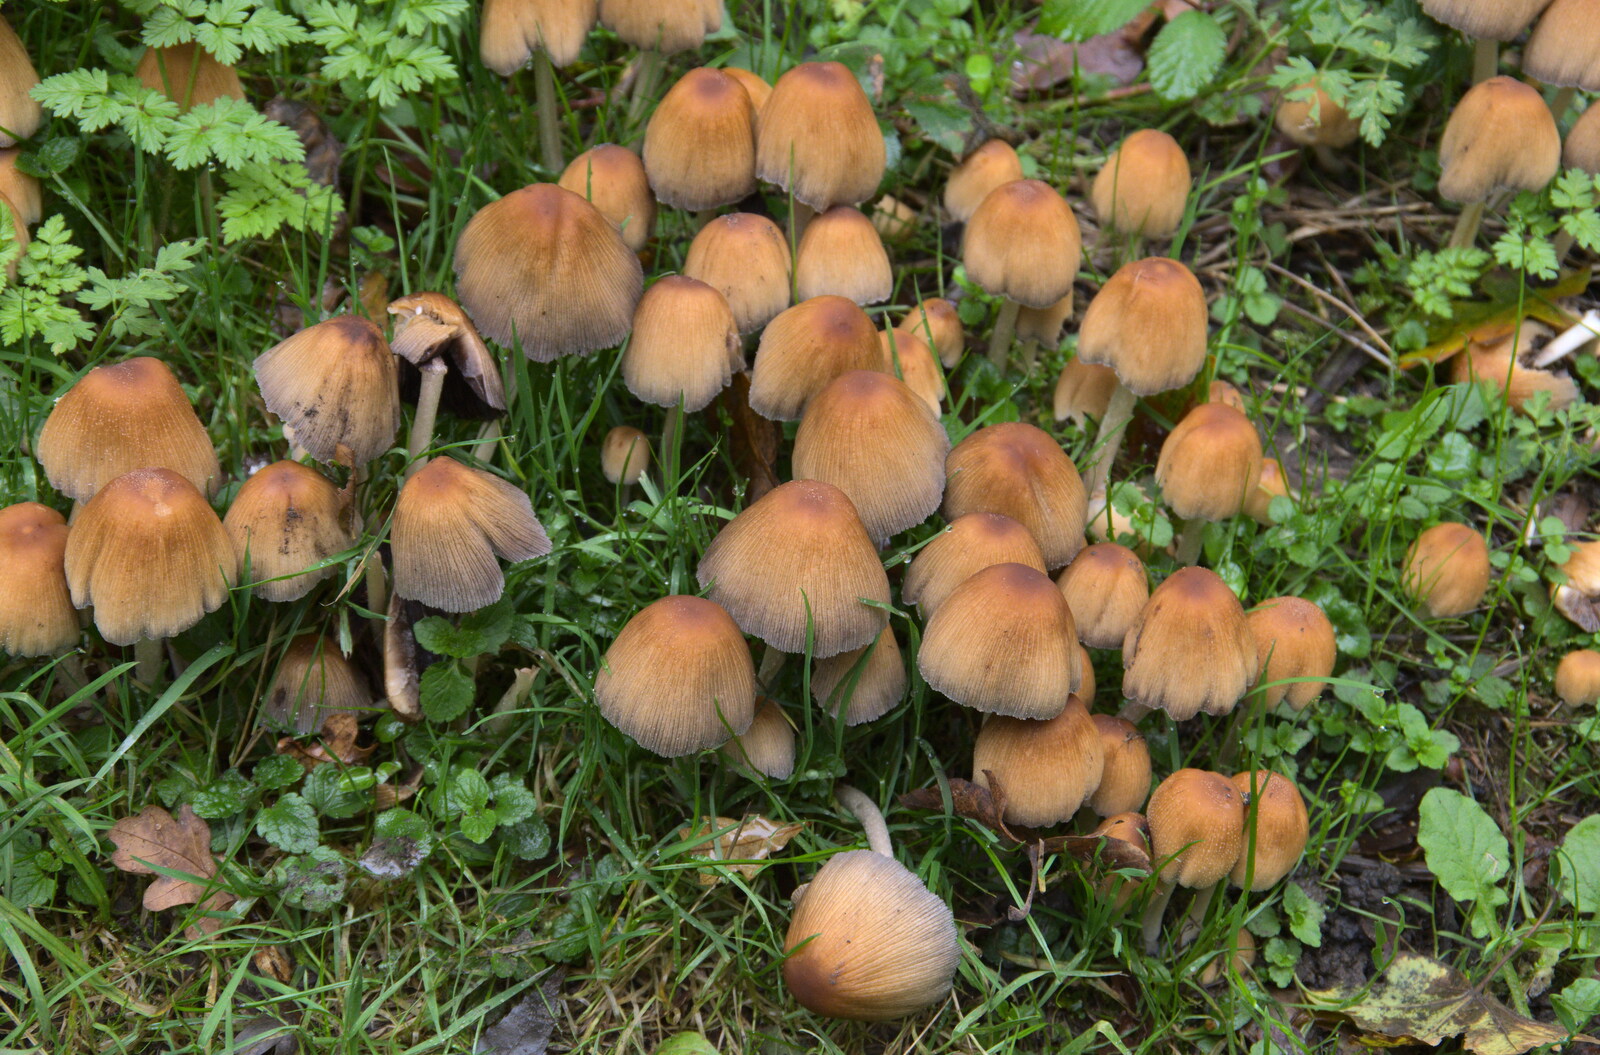 A bunch of mushrooms from A Walk Around Thornham Estate, Thornham Magna, Suffolk - 18th October 2020